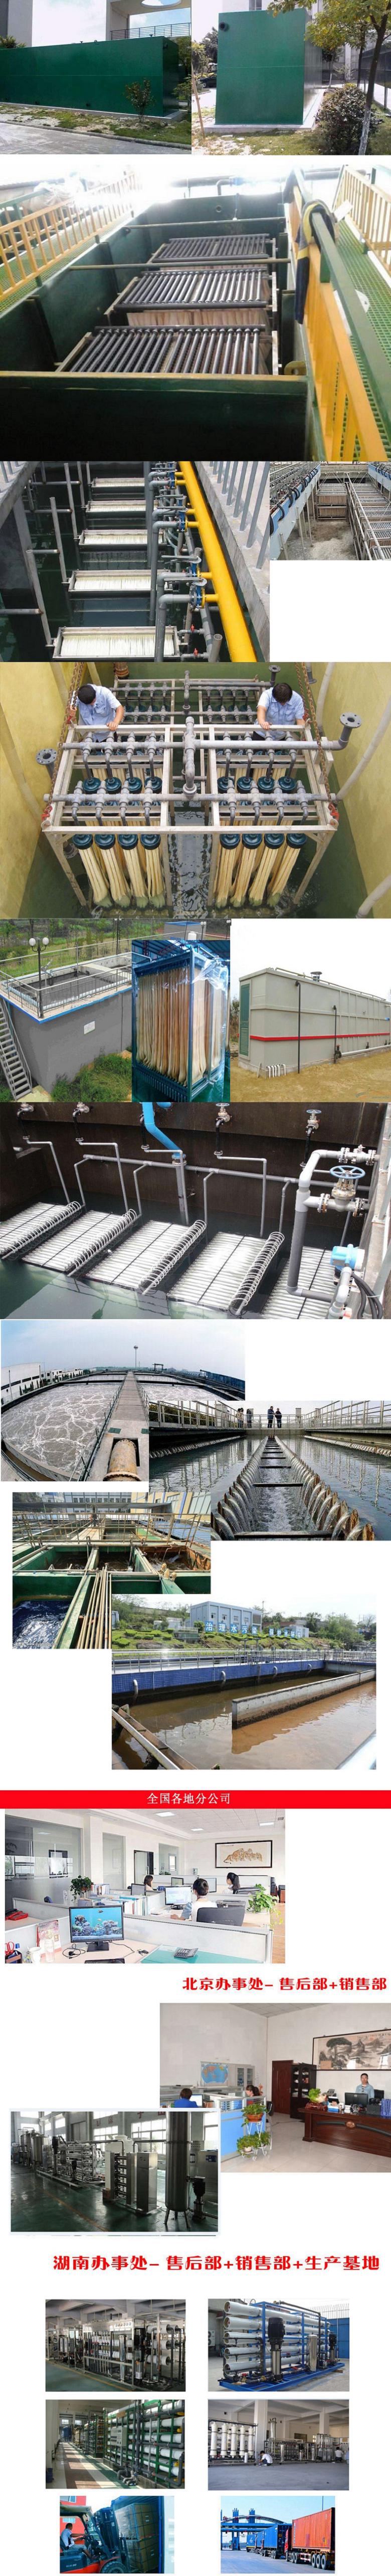 医疗污水处理设备厂家致远千秋 地埋一体化污水处理设备销售 卫生院污水处理设备4